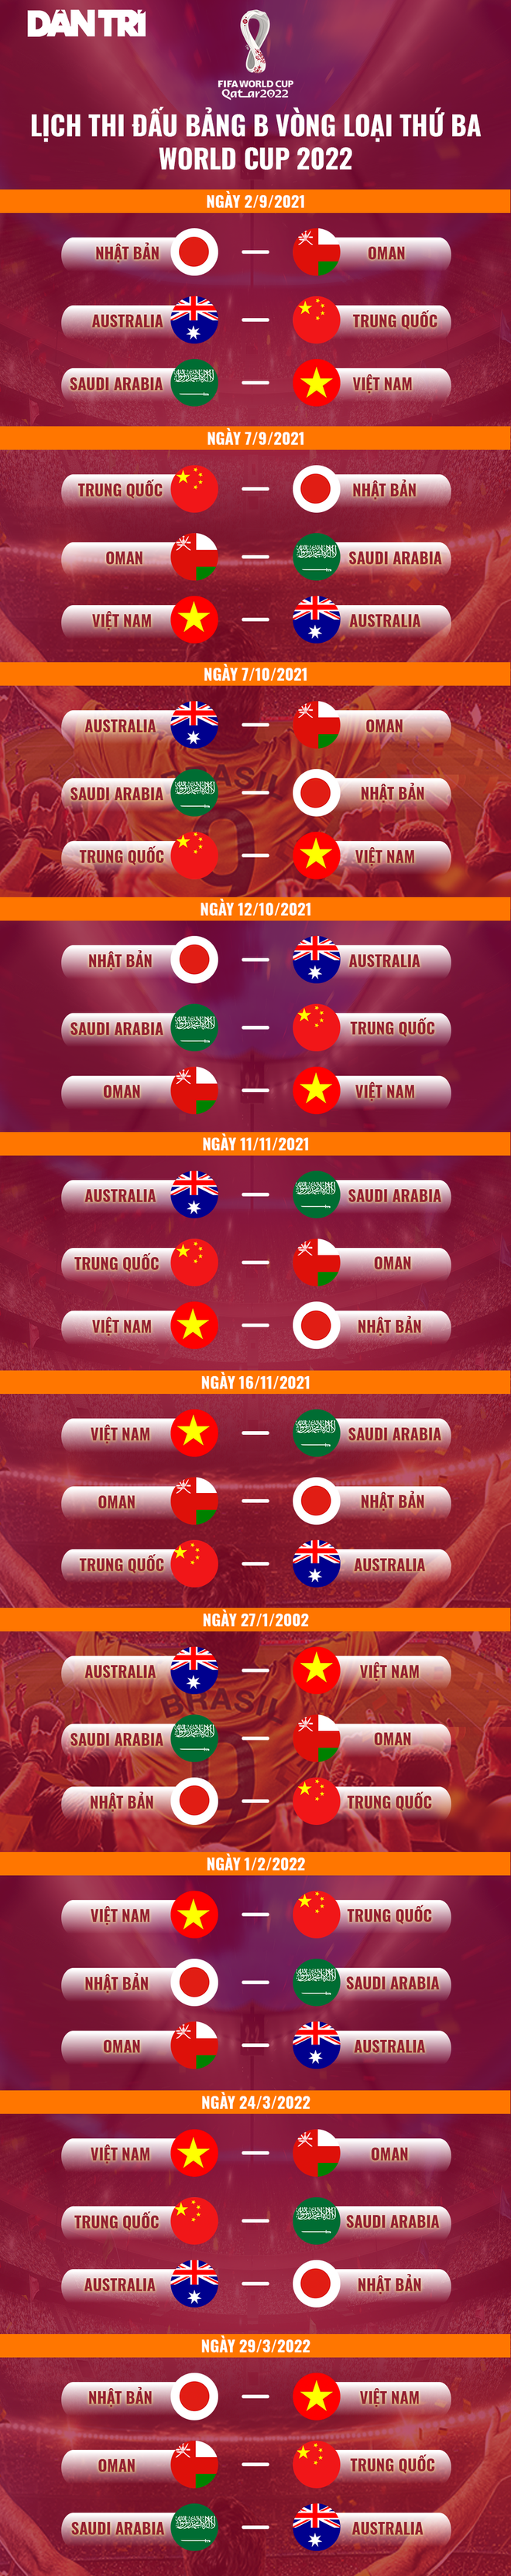 Đội tuyển Việt Nam đủ sức thách thức các ông lớn bóng đá châu Á - 3